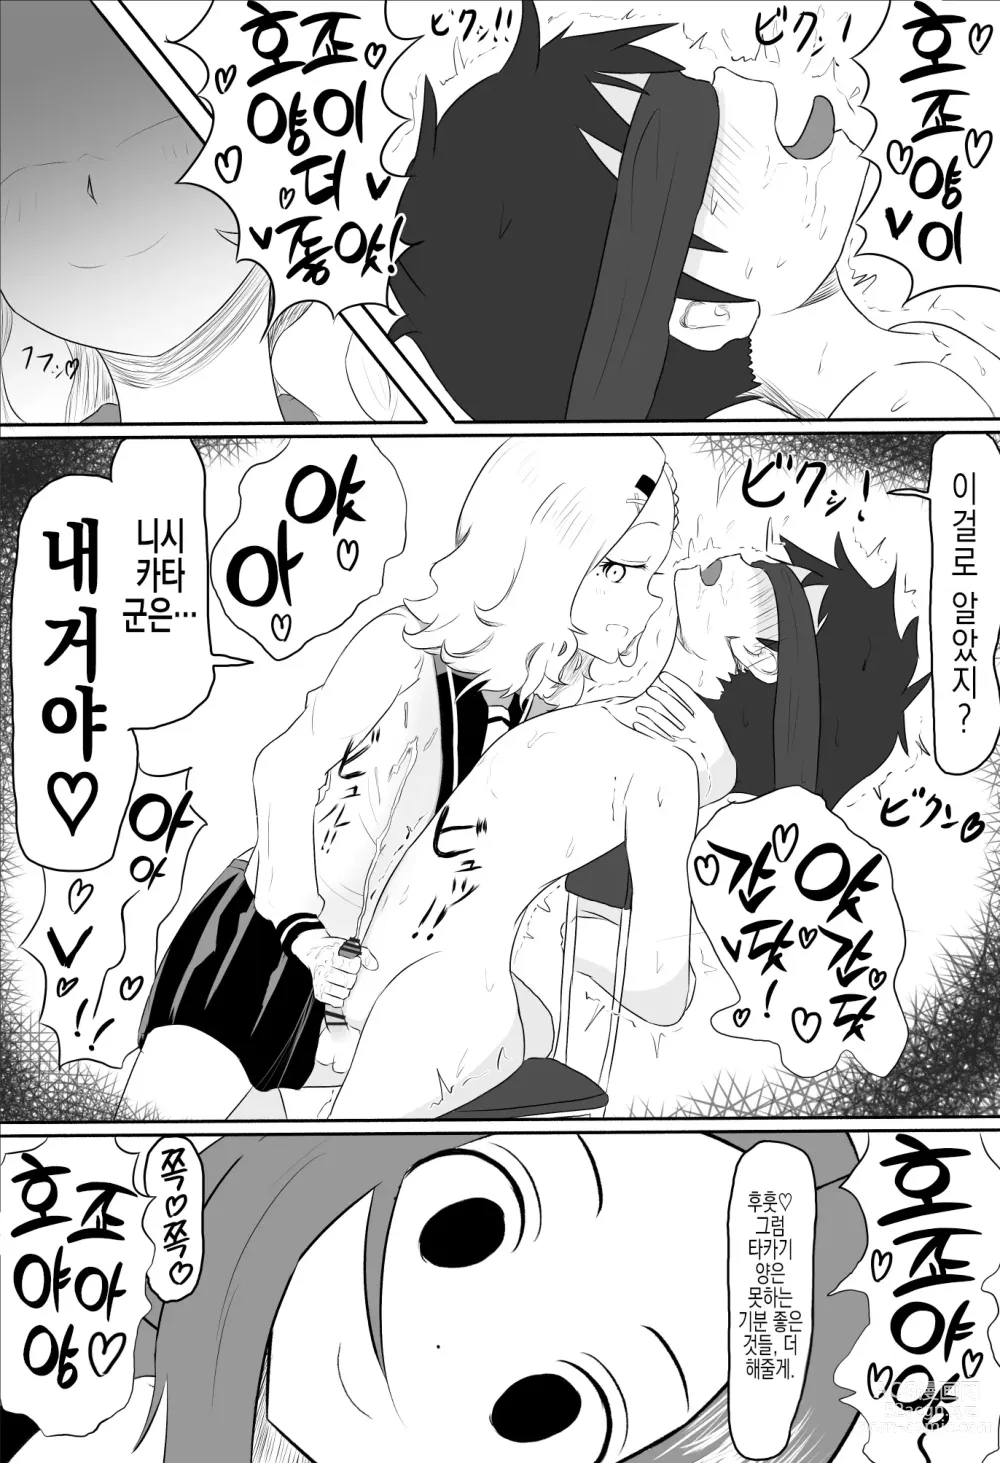 Page 4 of doujinshi 호죠 양에게 니시카타를 네토라레 당하는 타카기 양